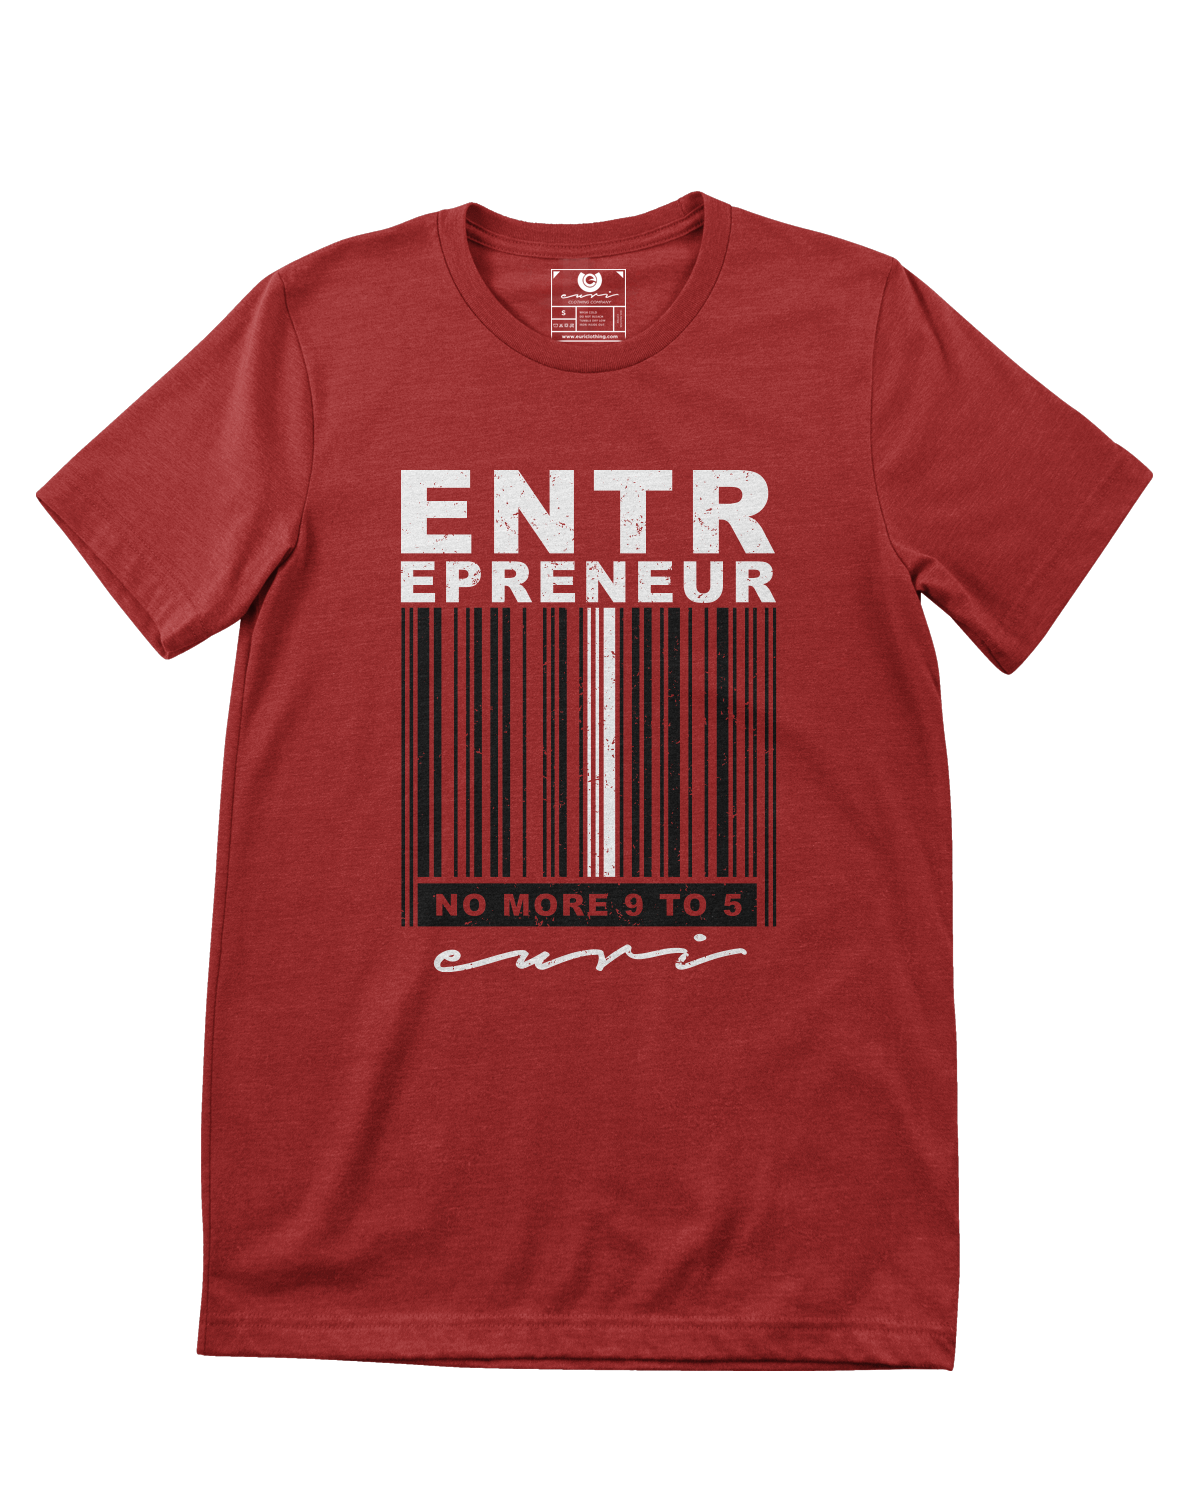 Entrepreneur Barcode - Euri Clothing